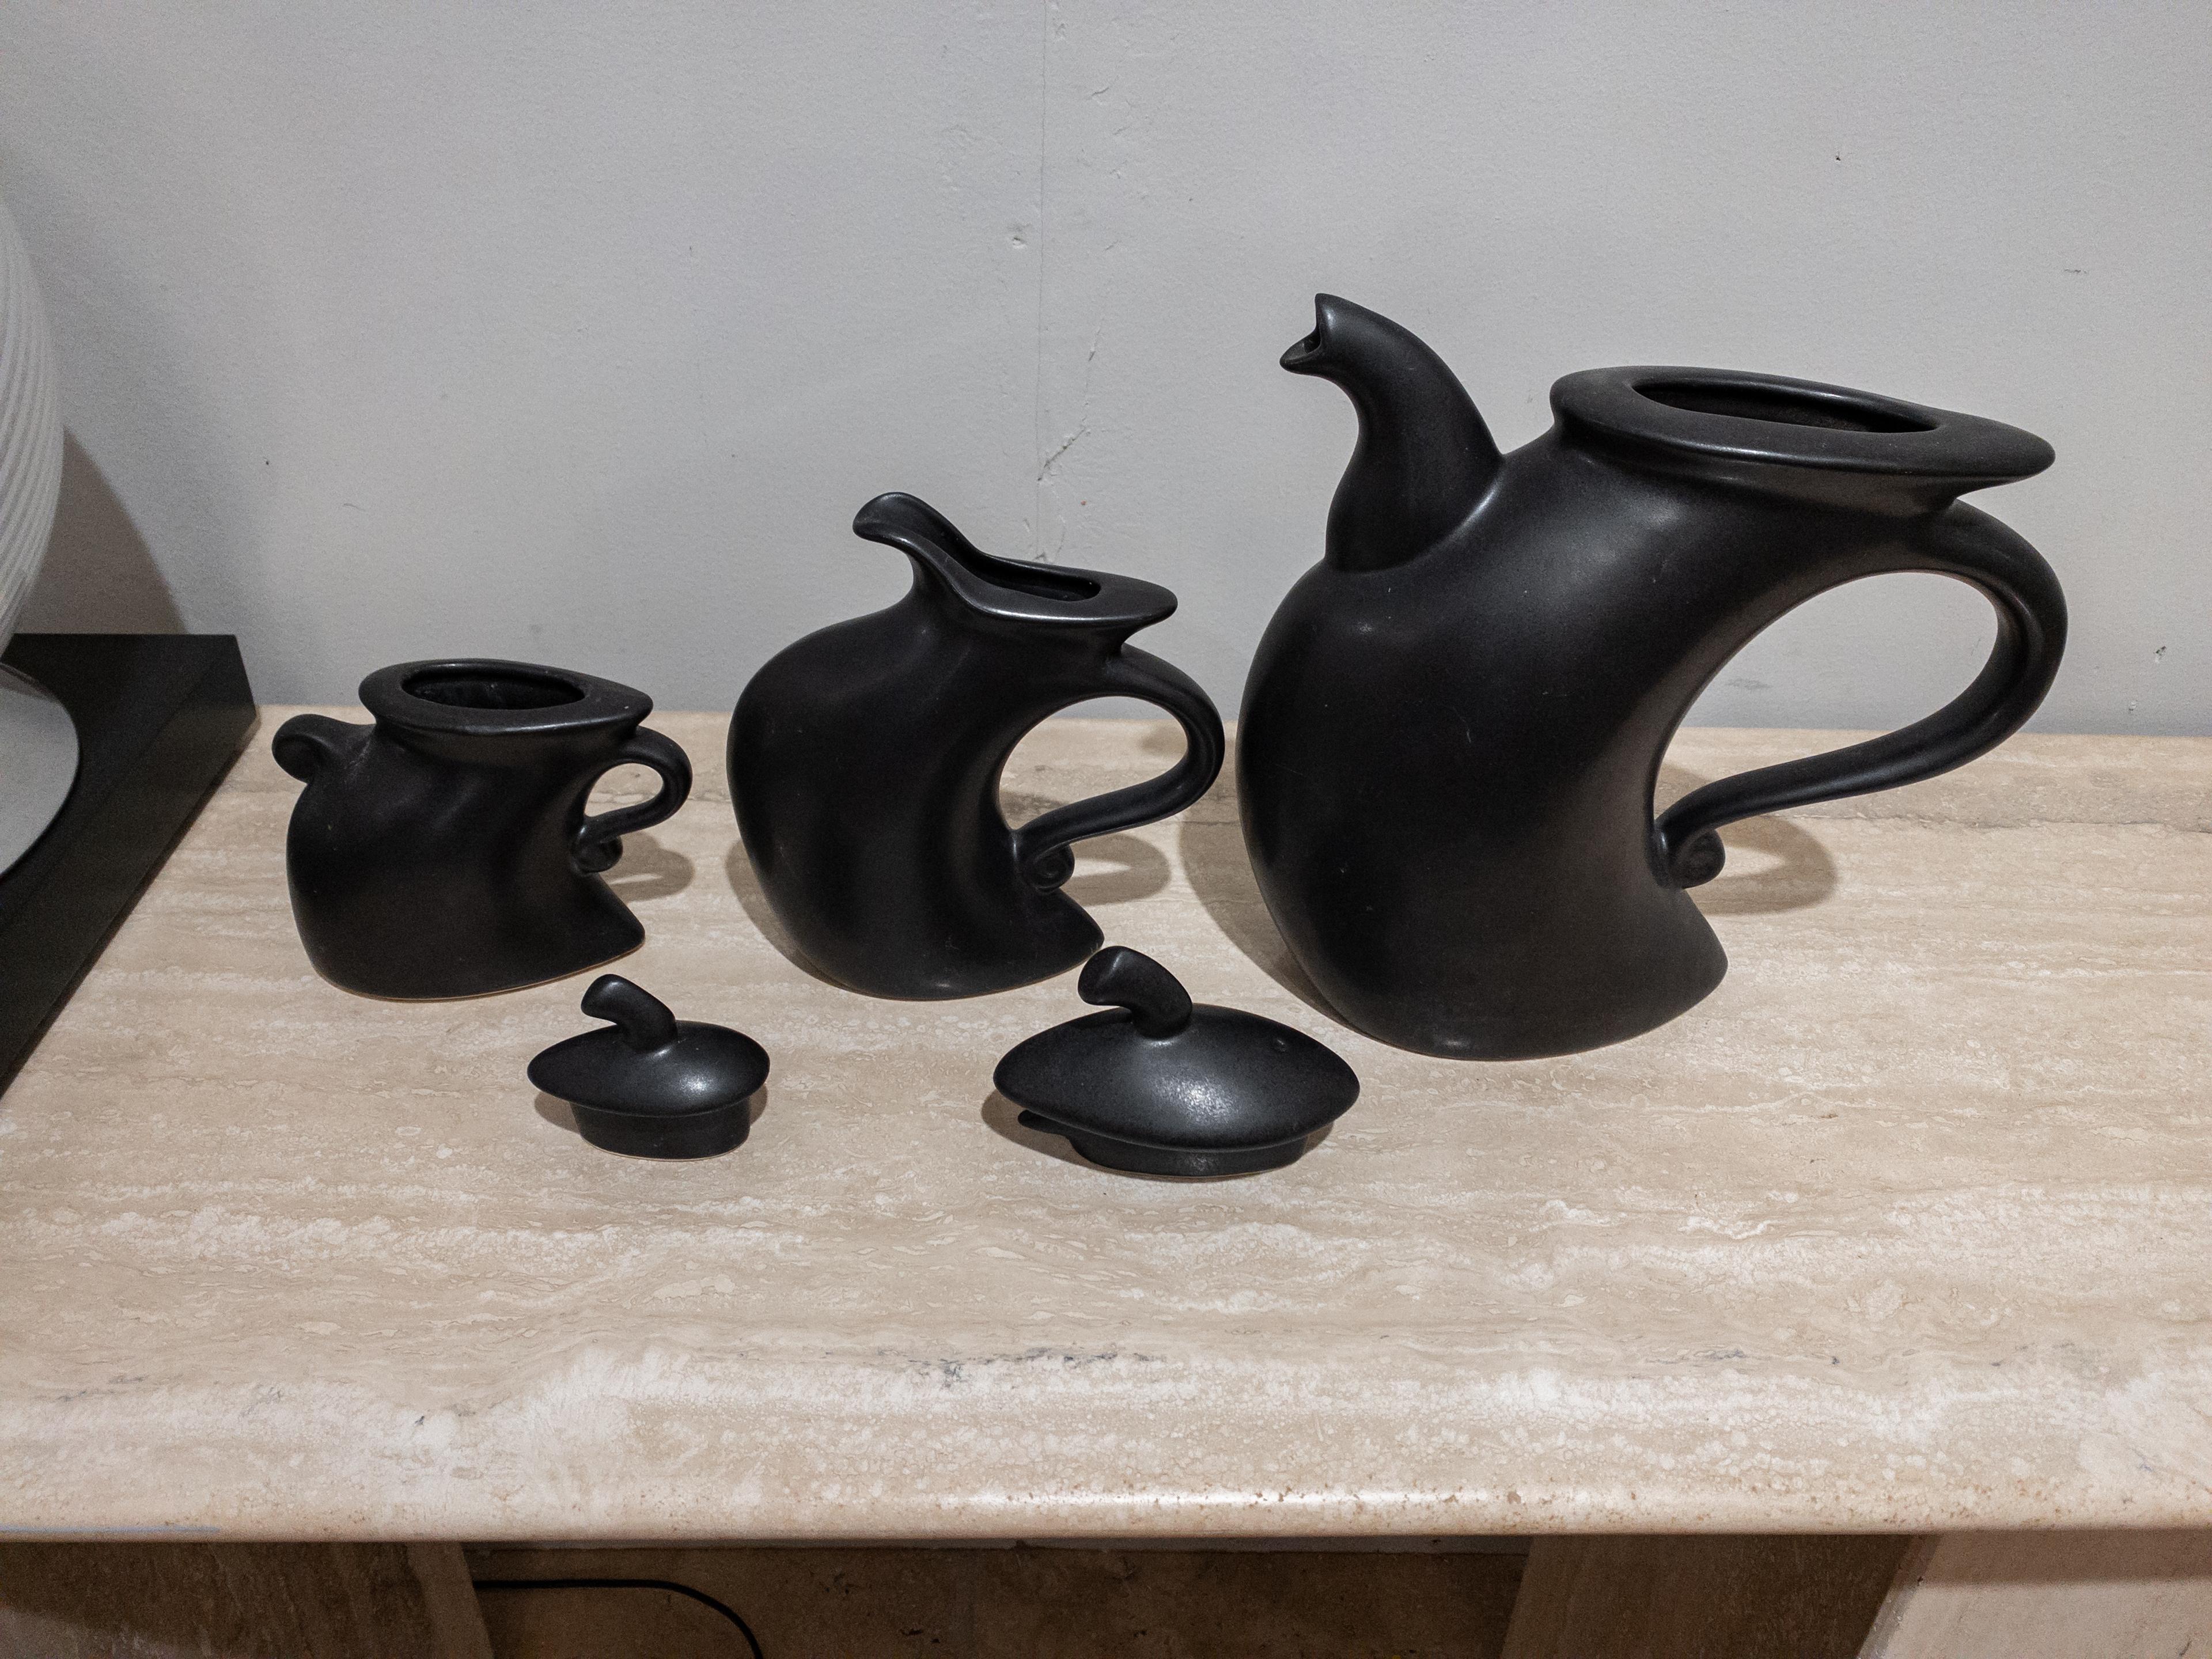 20th Century “Struttin Down 5th Avenue” Ceramic Tea Set For Sale